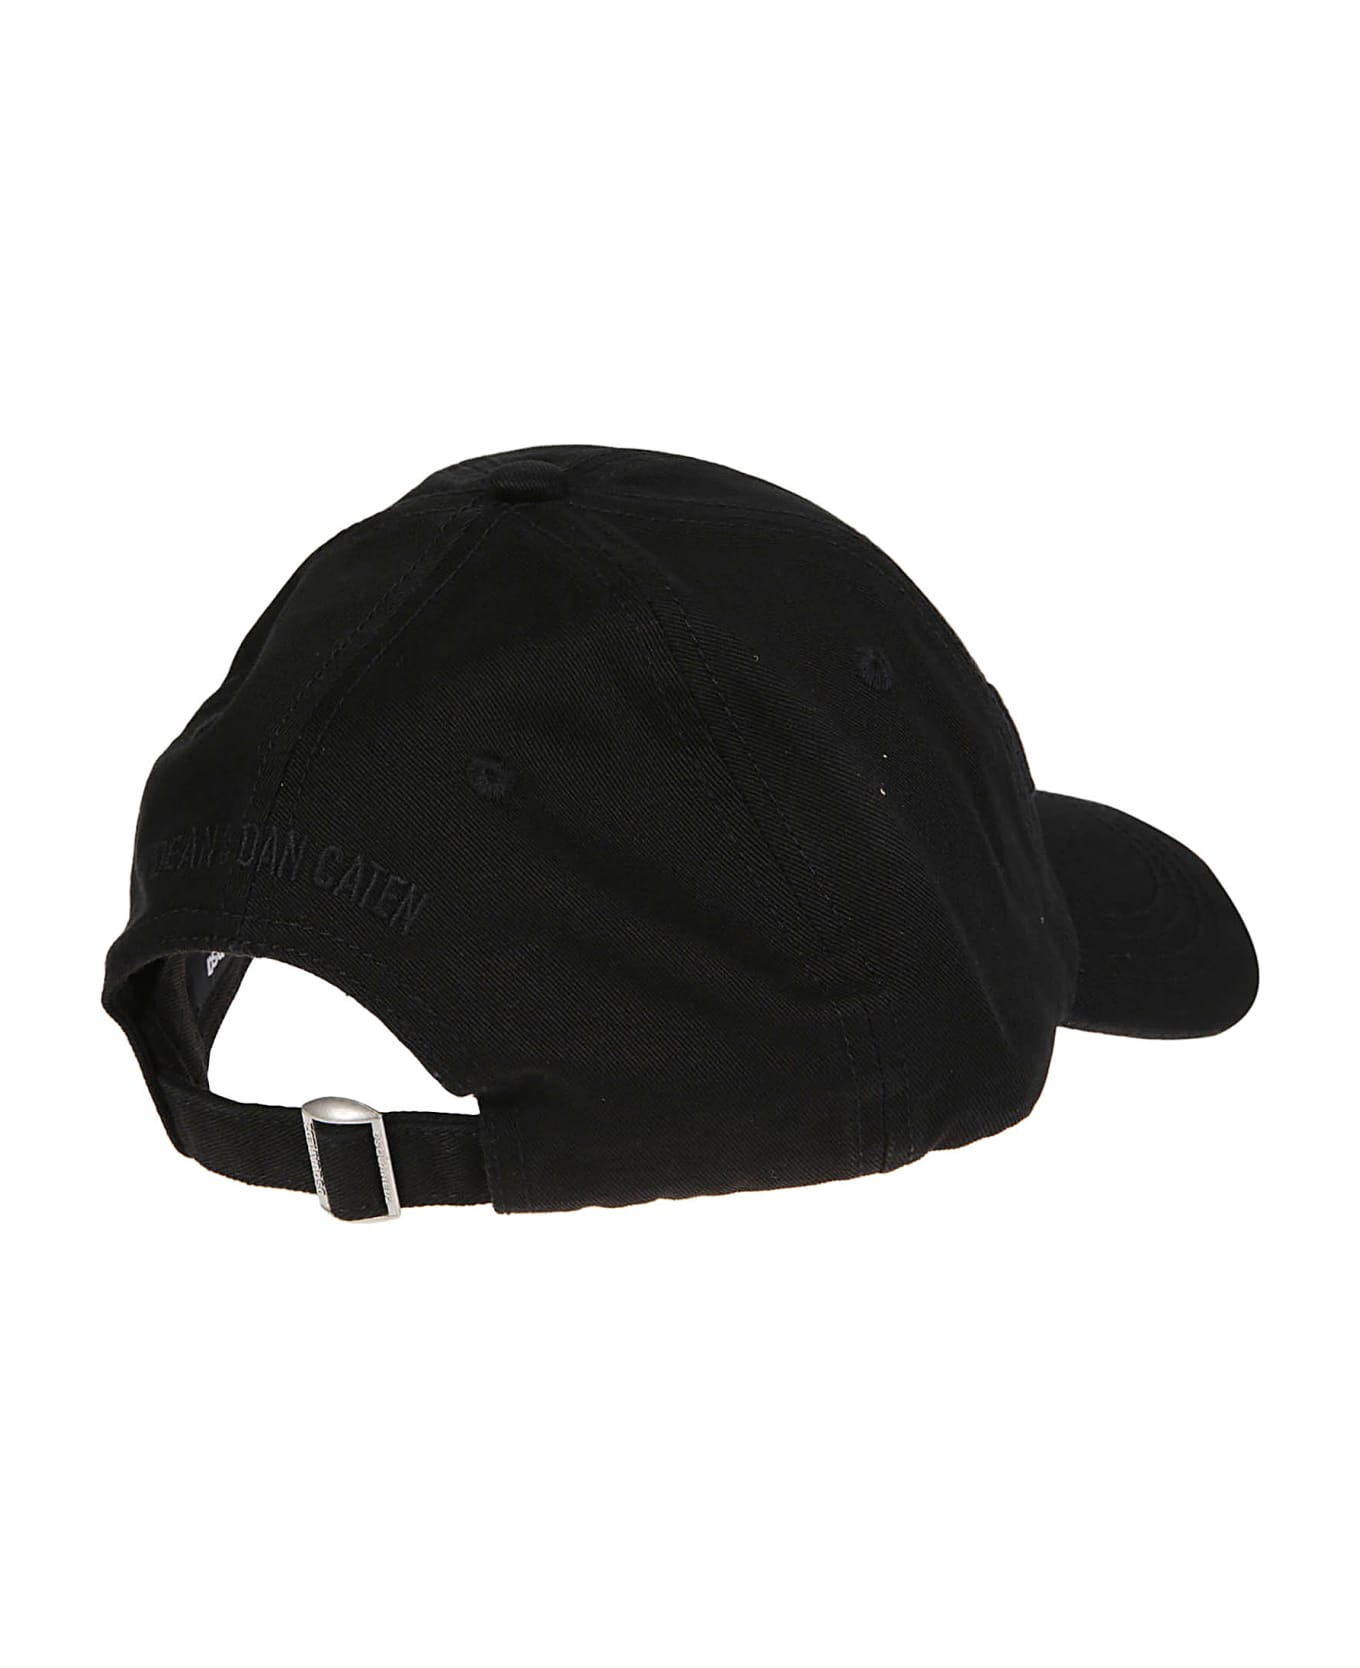 Dsquared2 Technicolor Baseball Cap - Nero/nero 帽子